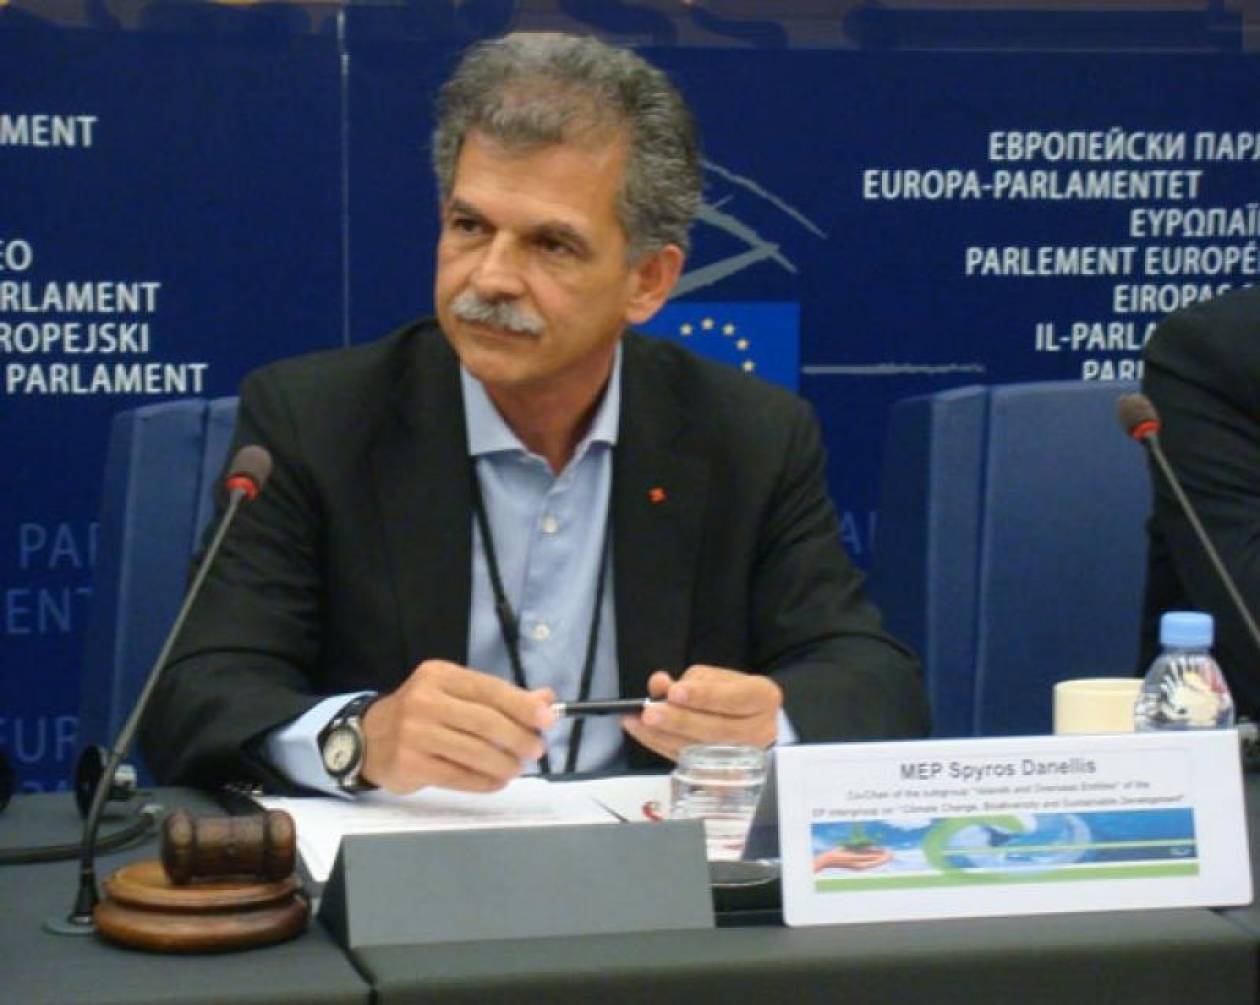 Αίρεται η ασυλία του Ευρωβουλευτή του ΠΑΣΟΚ Σπύρου Δανέλλη